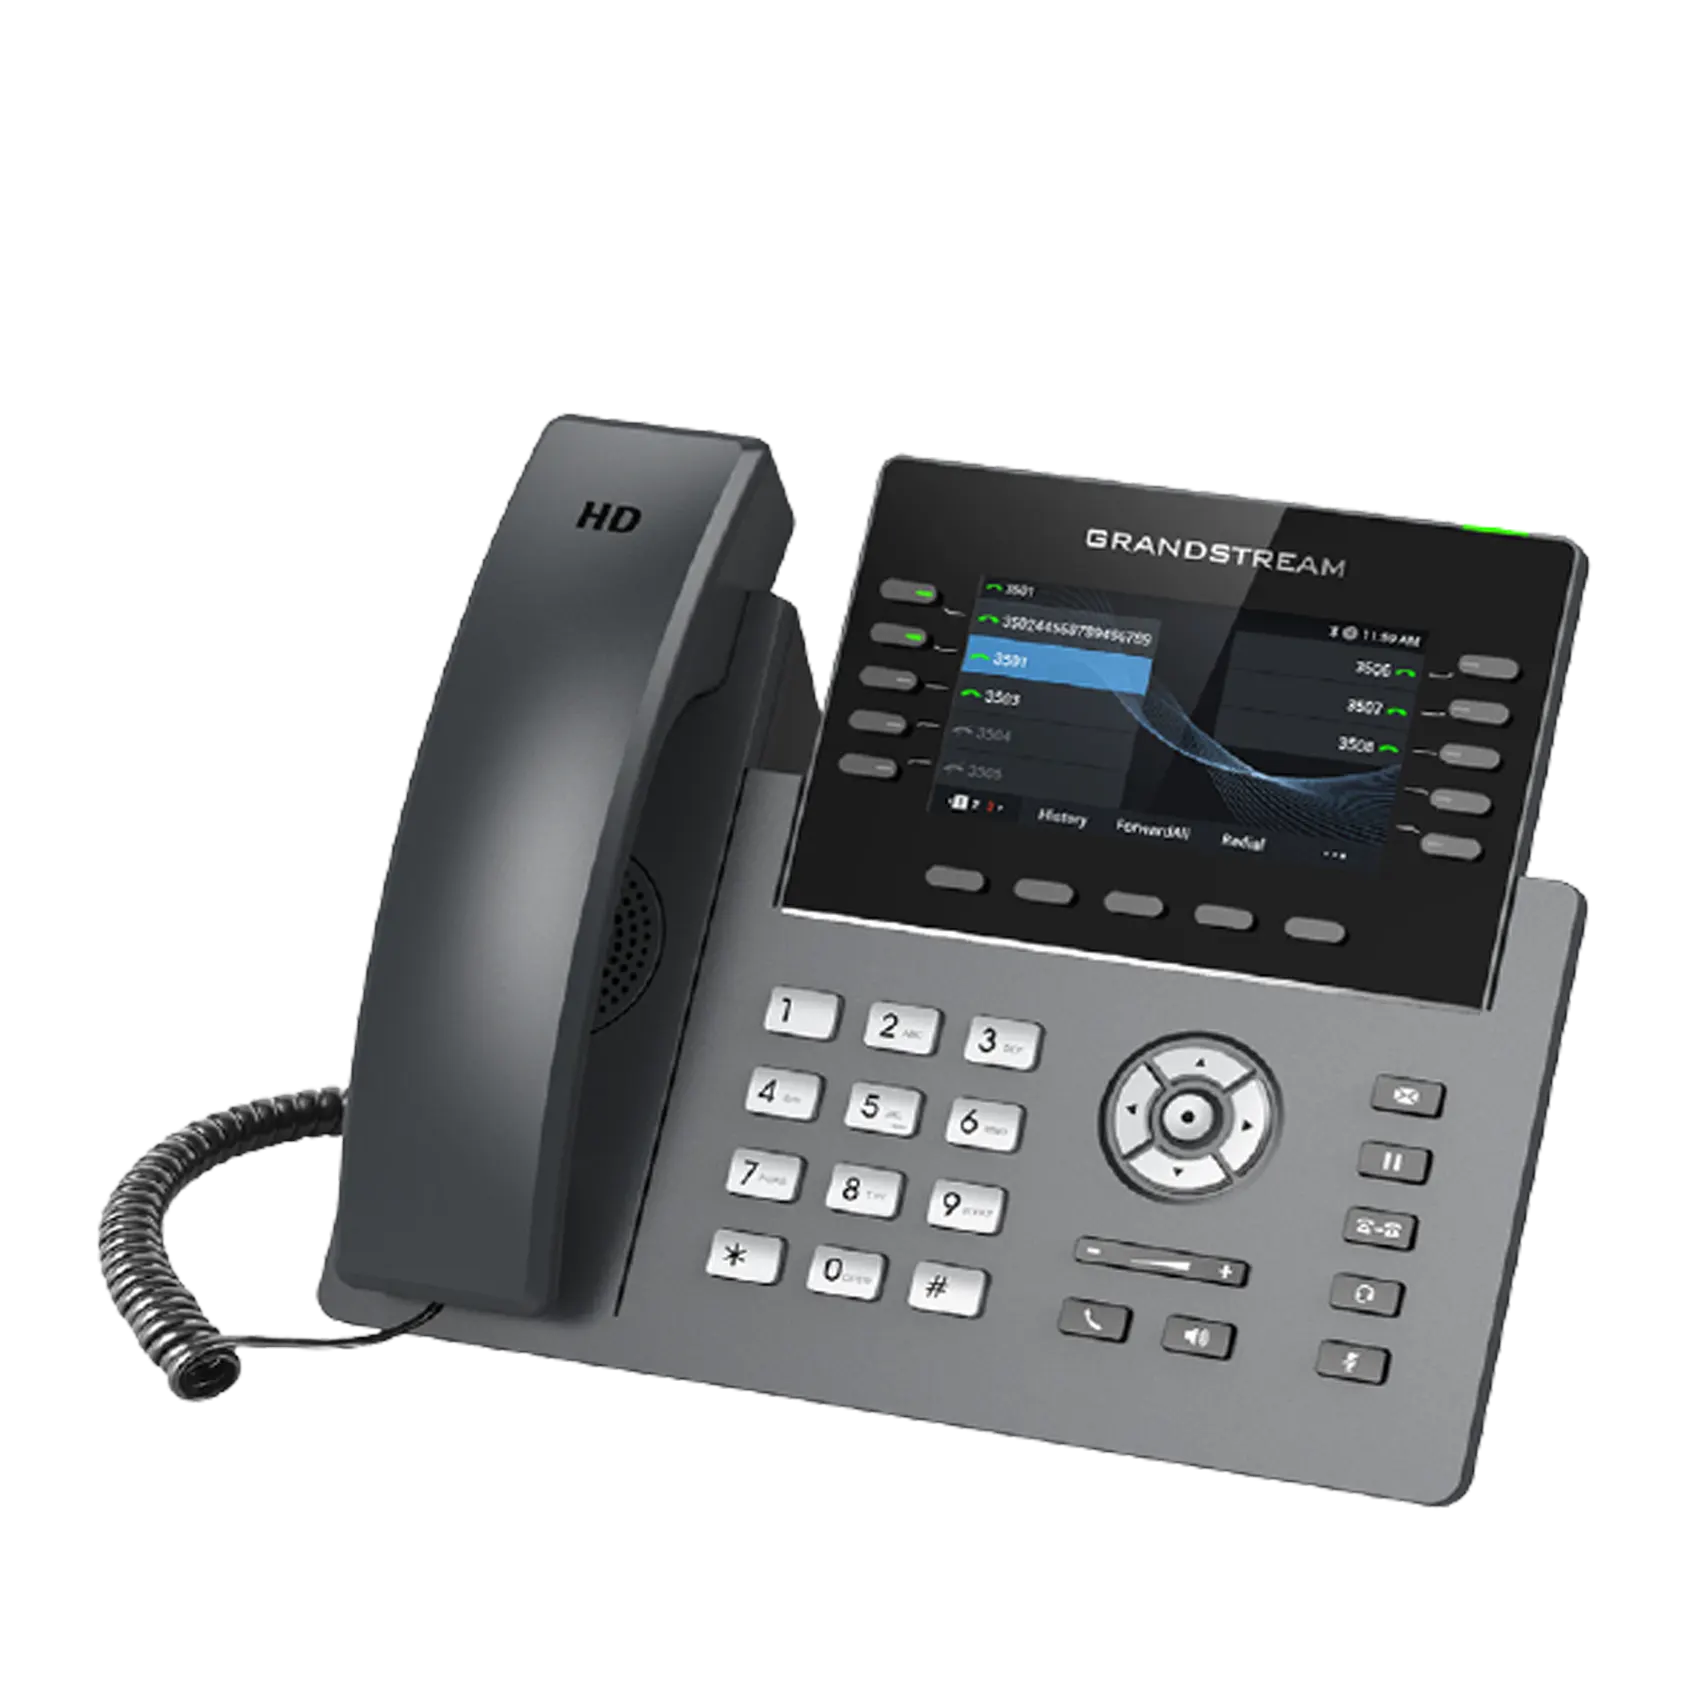 تلفن VoIP گرنداستریم مدیریتی GRP2615